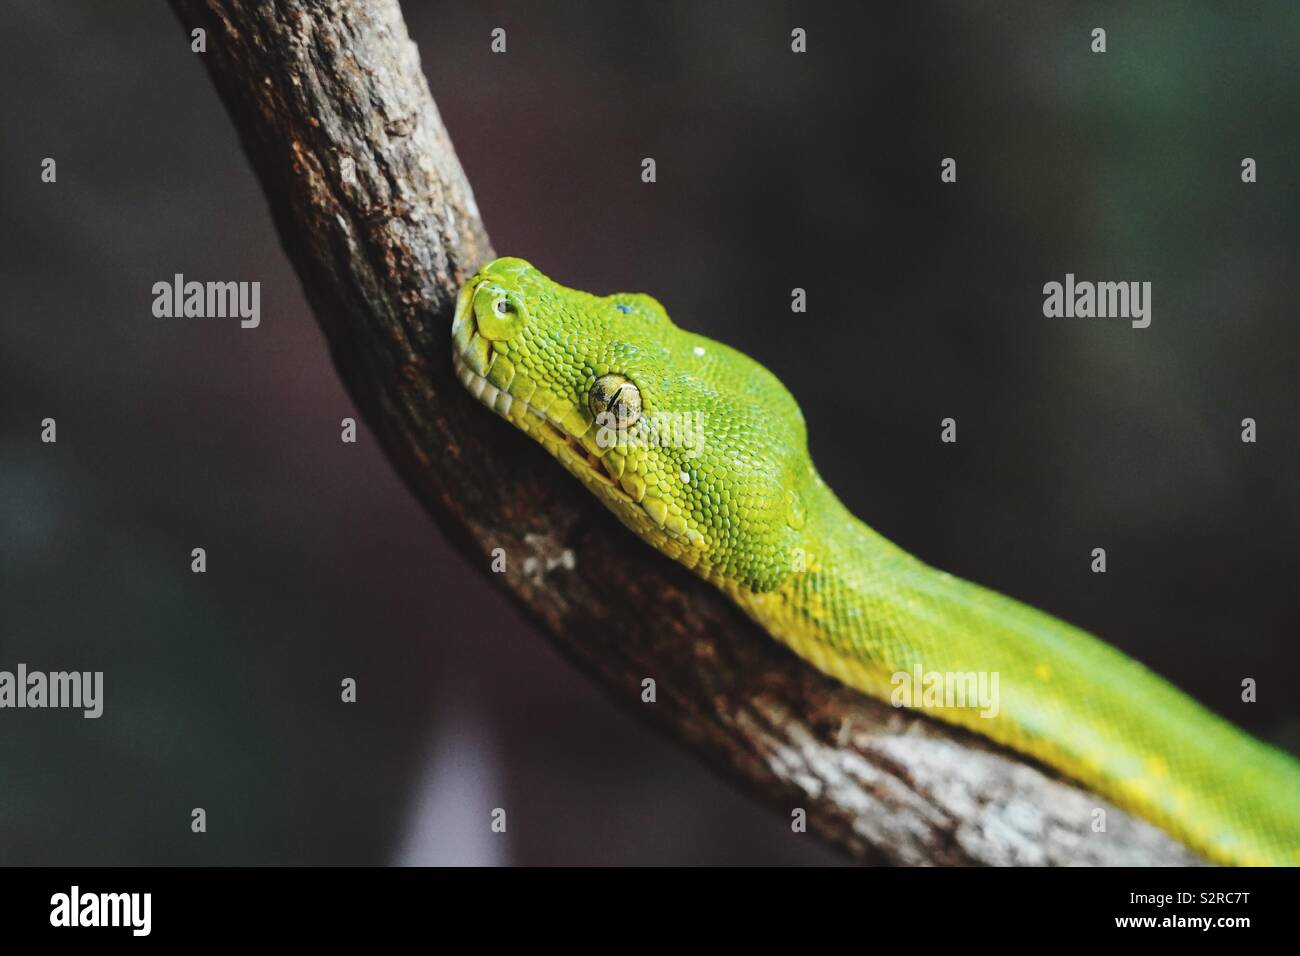 Dettaglio foto, testa di green tree python su un ramo. Foto Stock